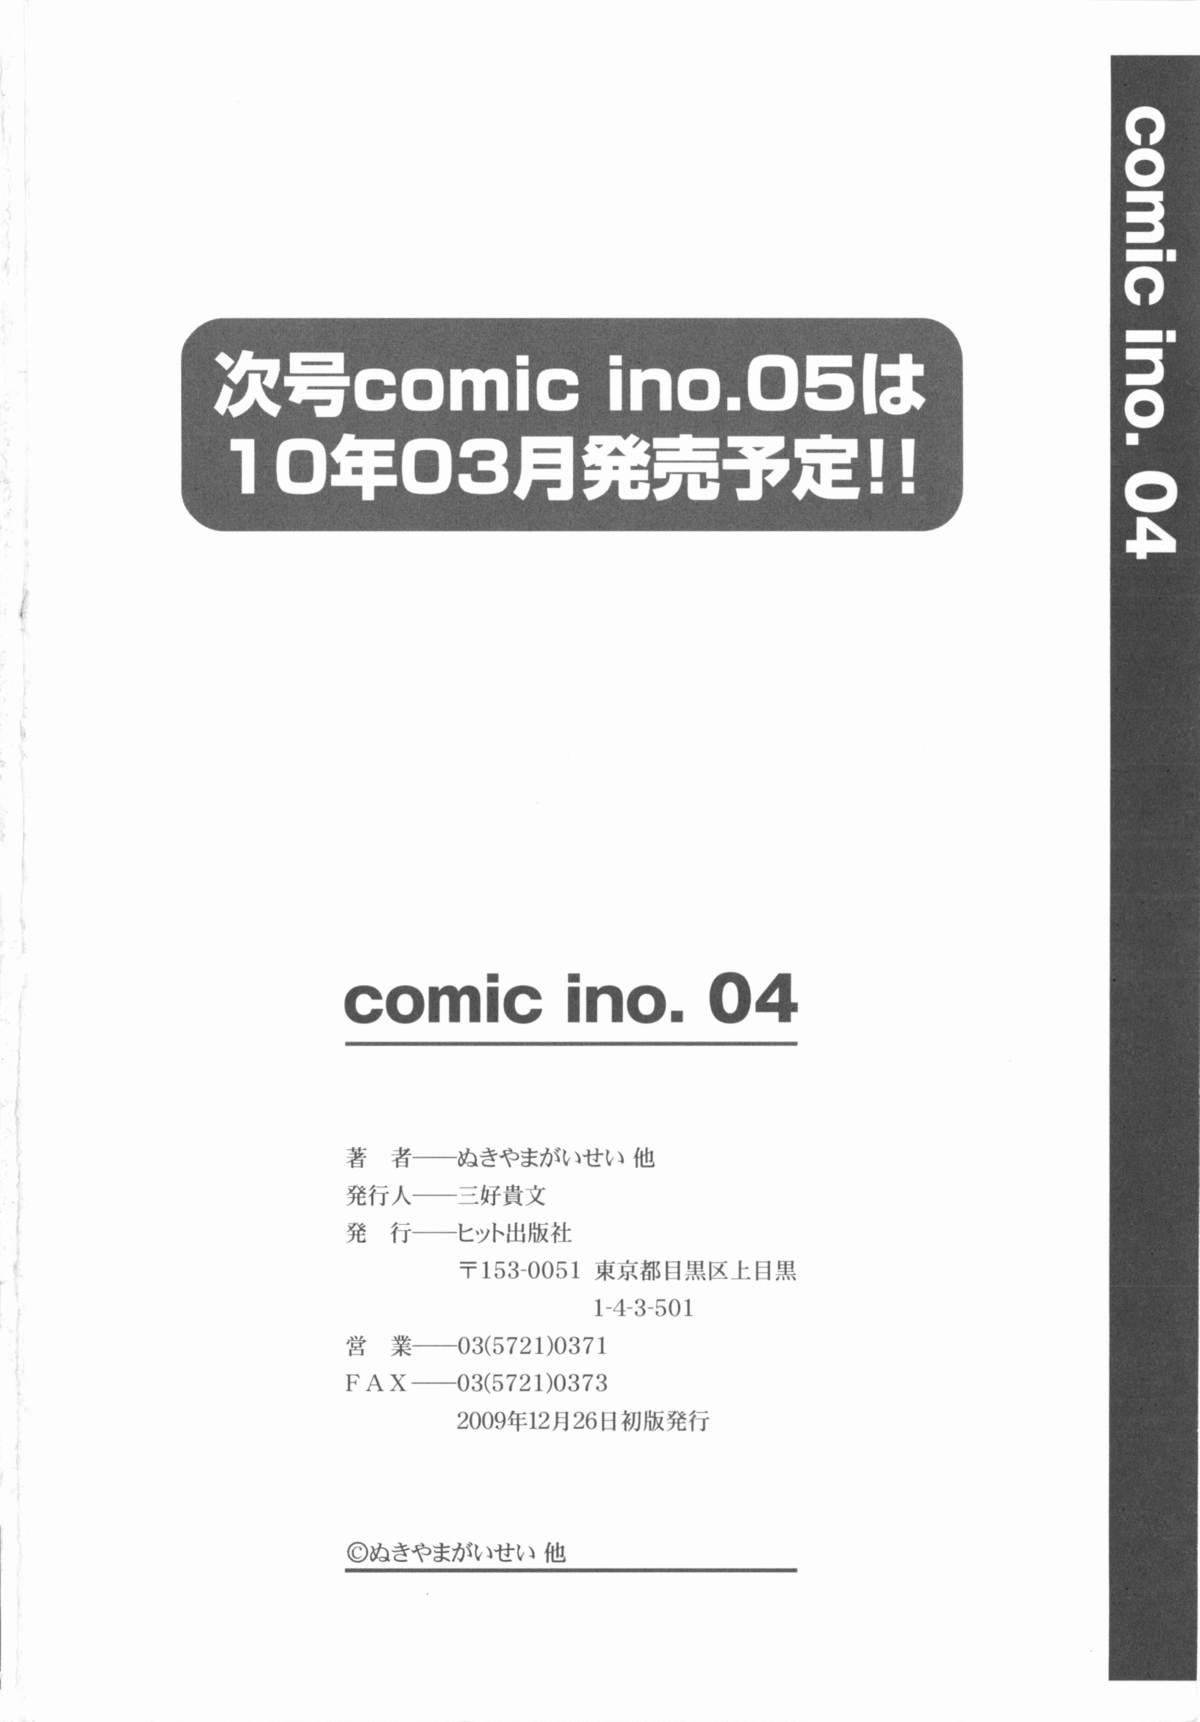 Comic Ino. 04 195